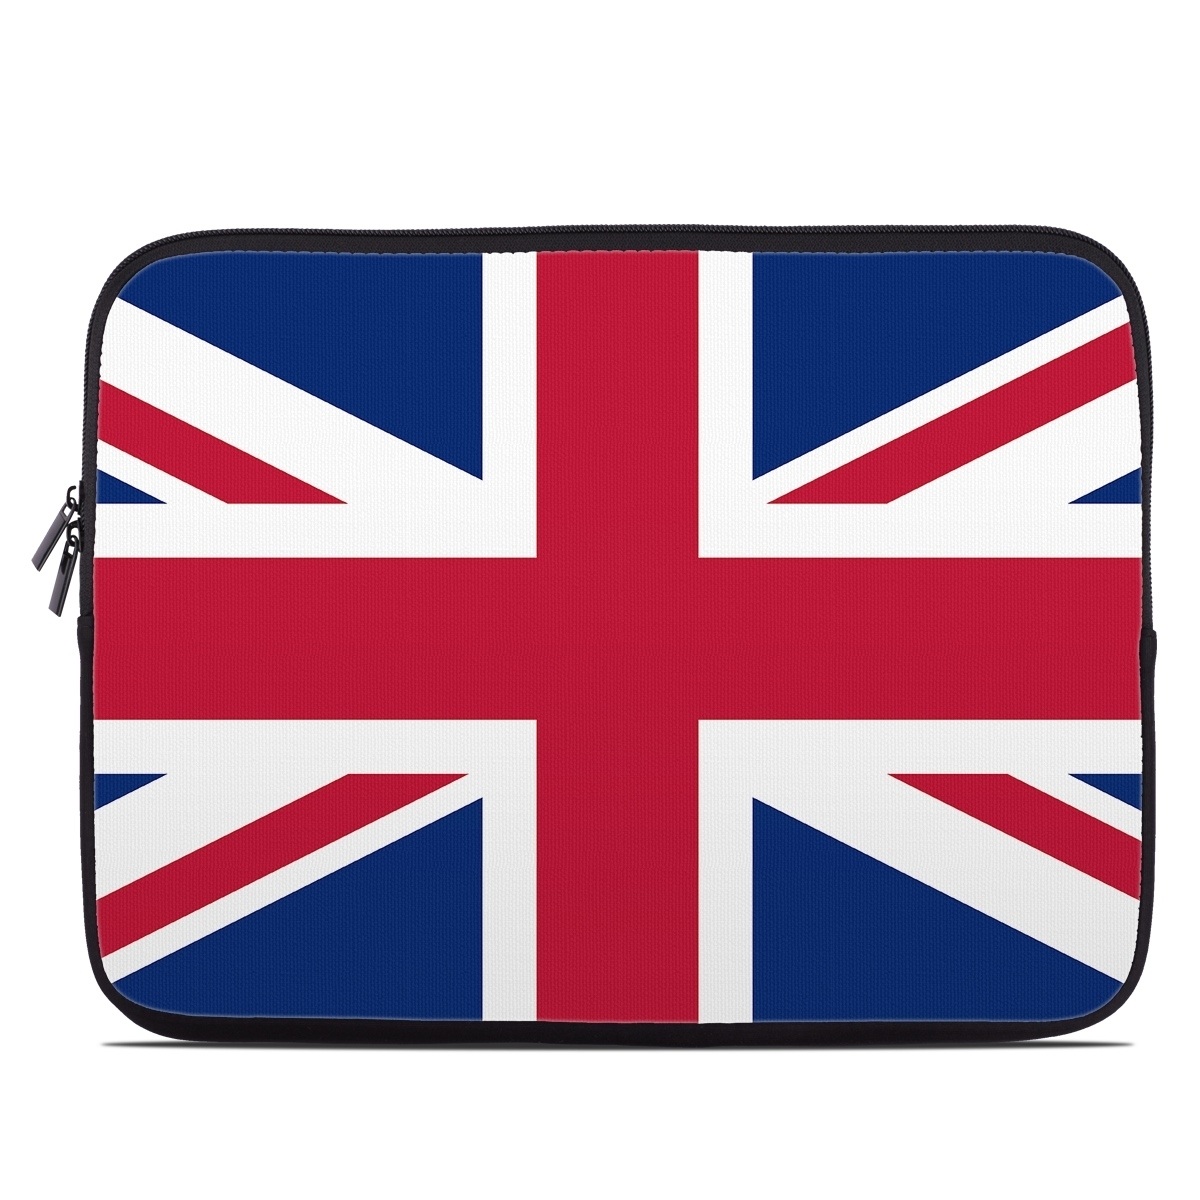 Laptop Sleeve - Union Jack (Image 1)